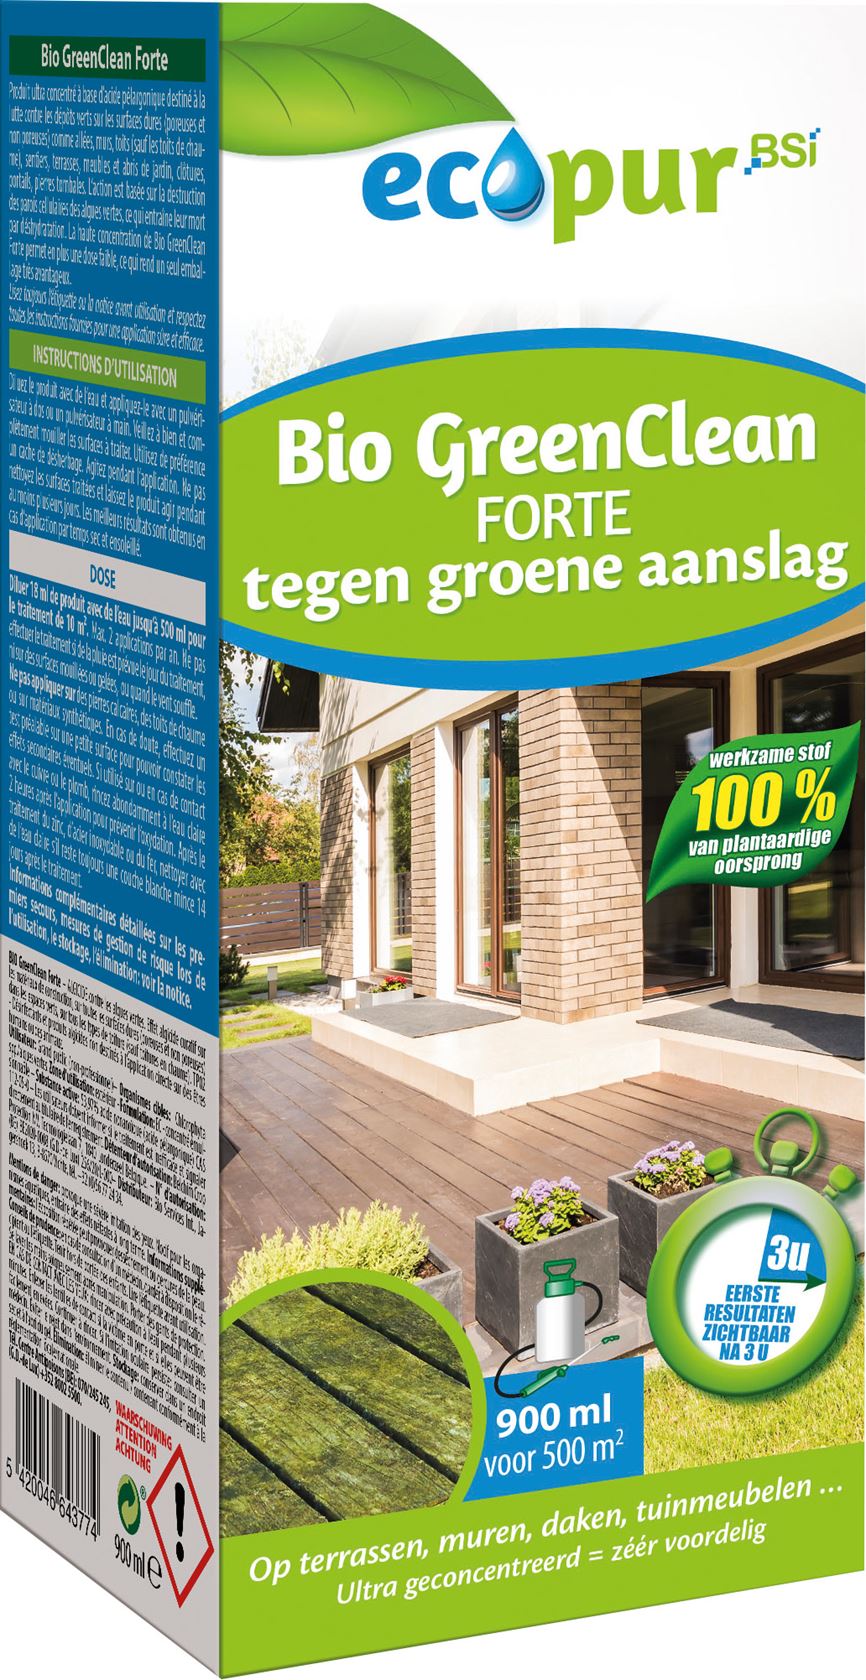 Ecopur-Bio-GreenClean-900ml-ecologische-groenreiniger